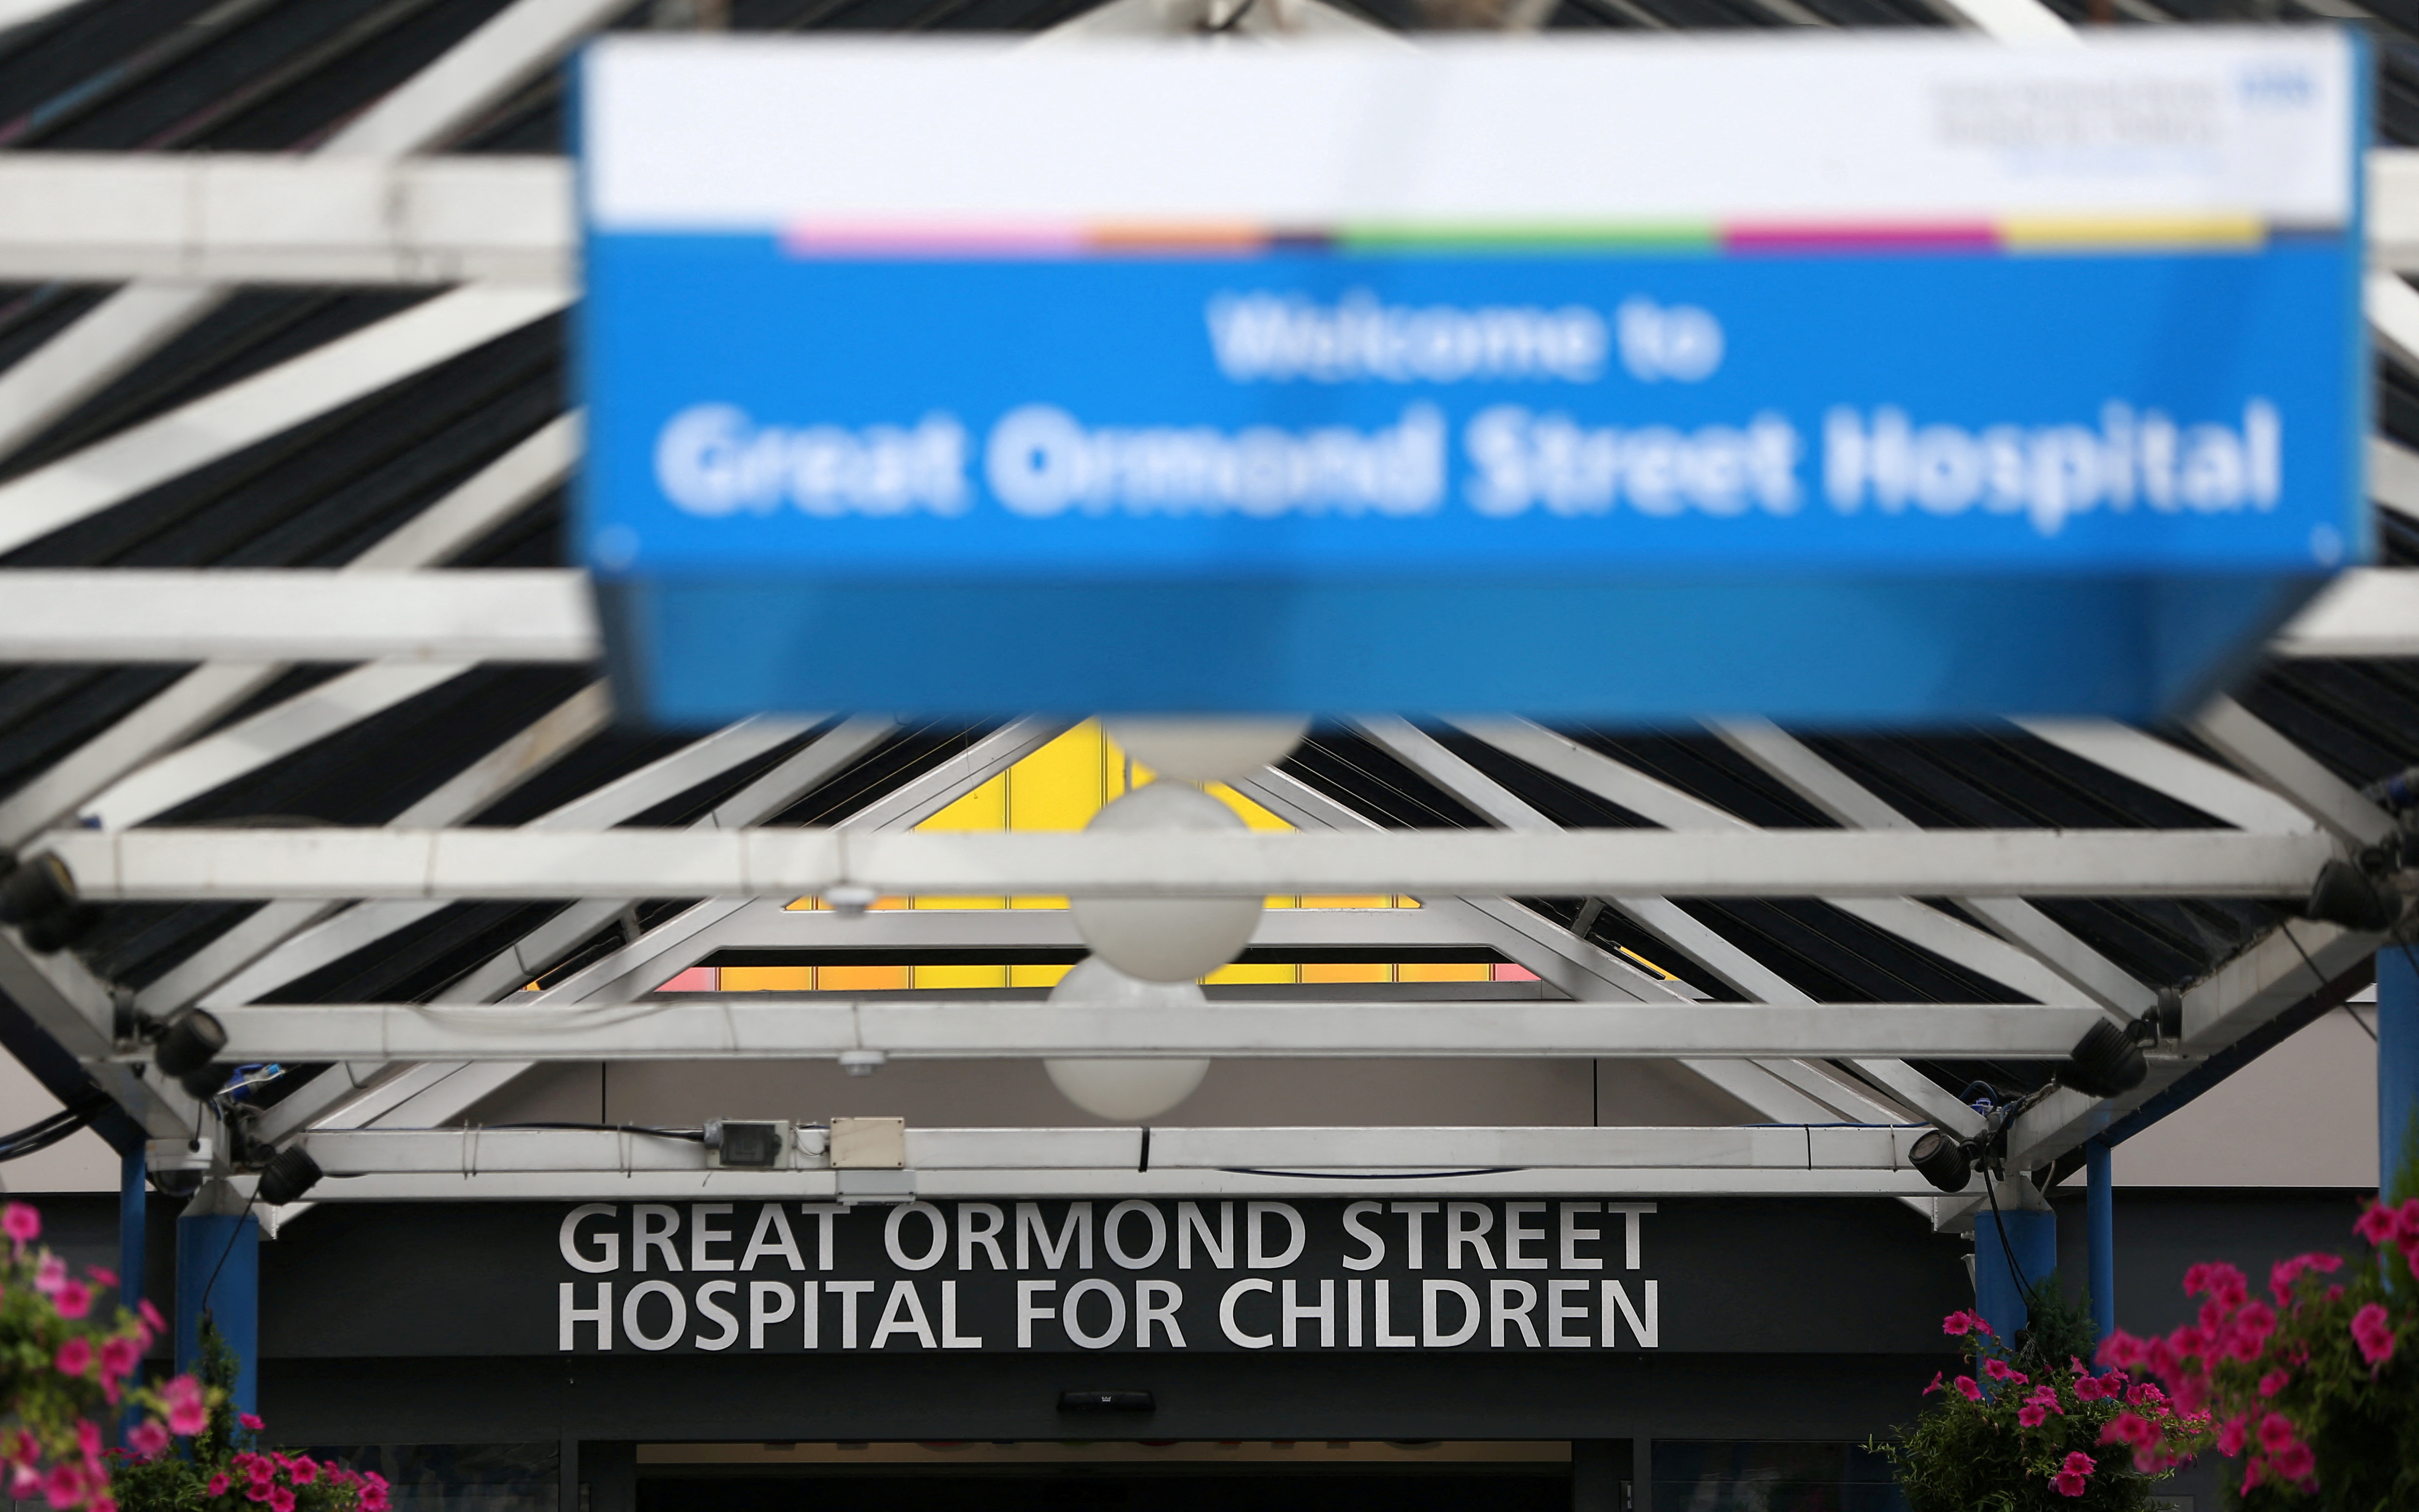 Great Ormond Street Hospital is seen in London